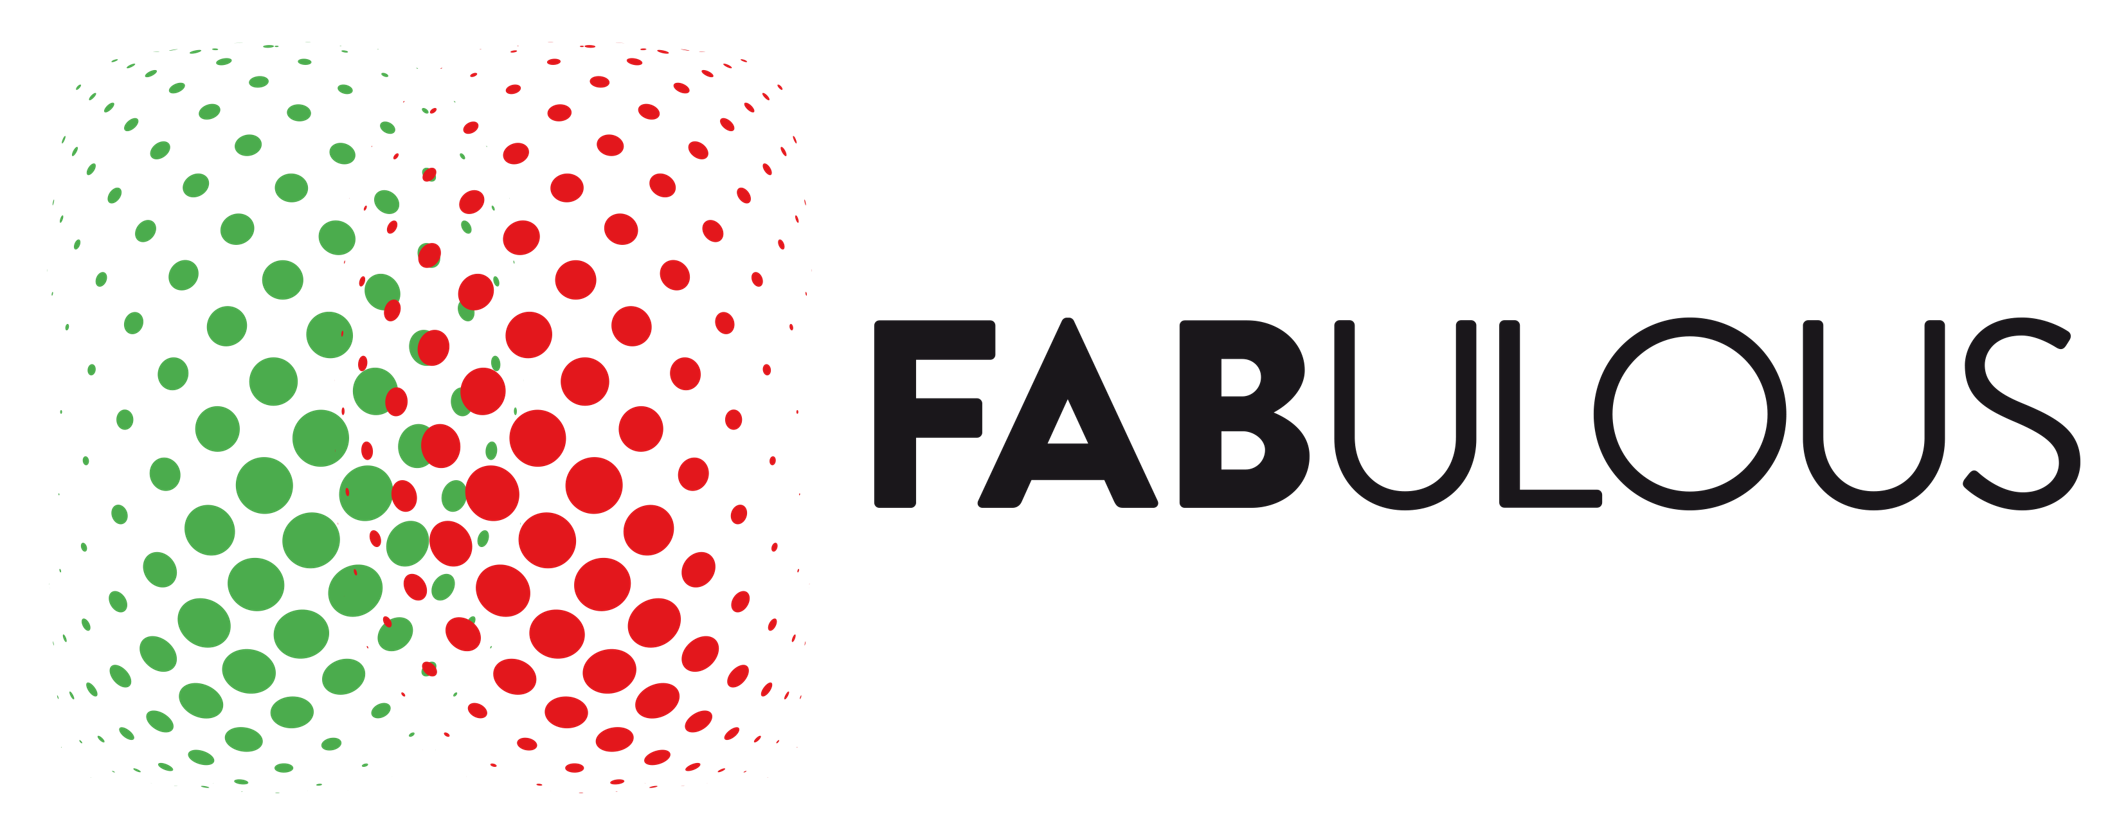 FABULOUS Logo